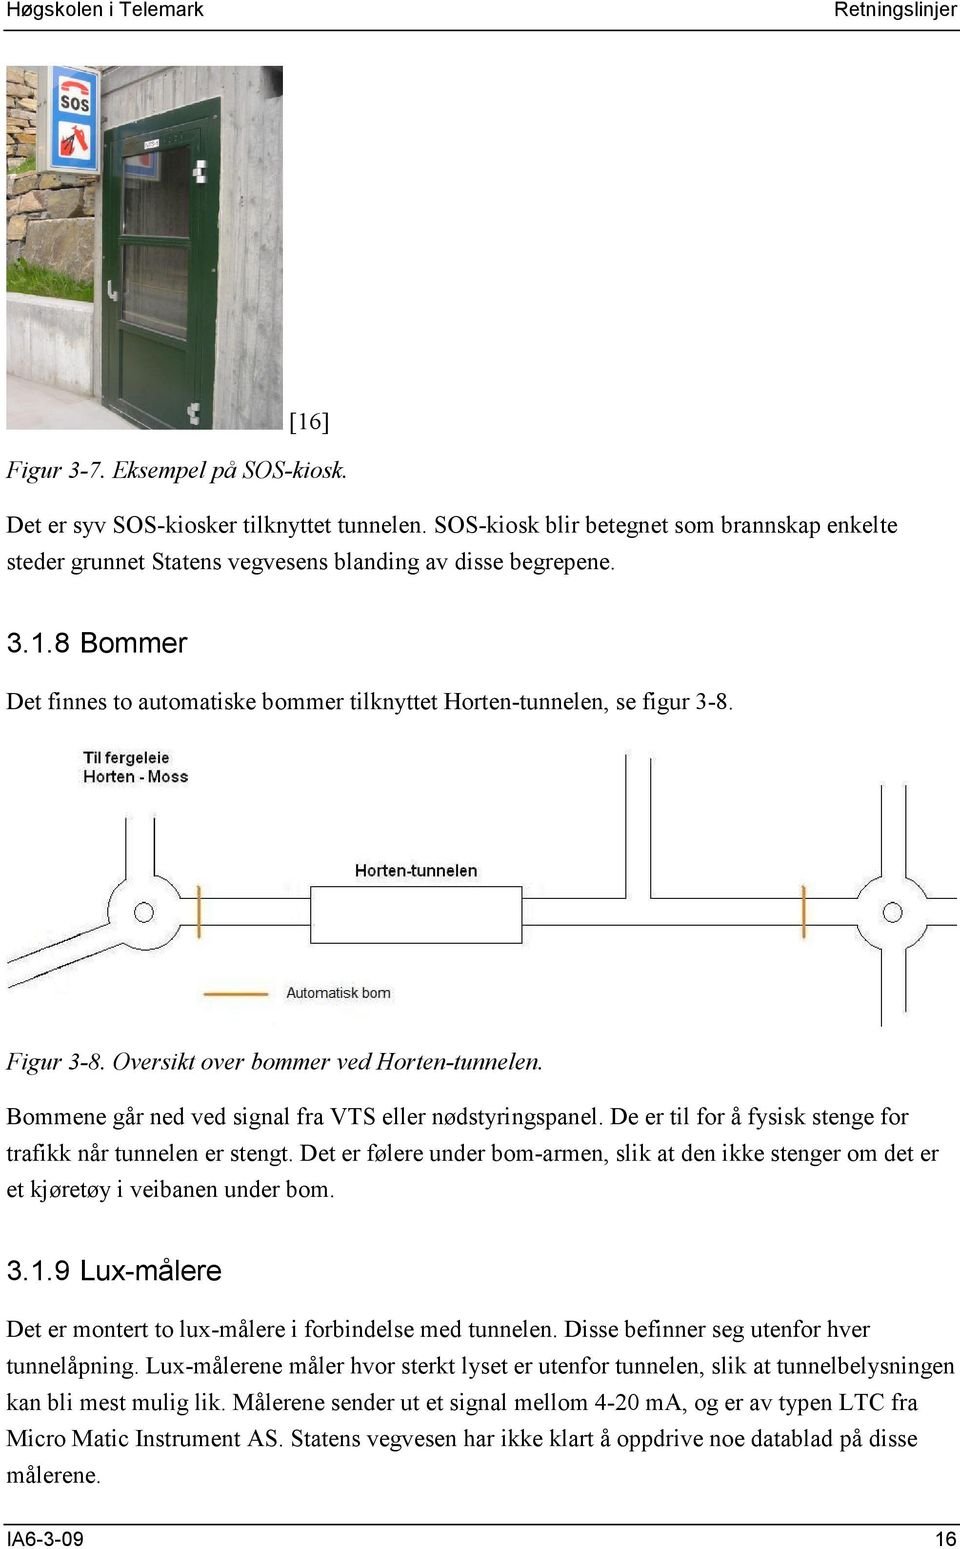 Figur 3-8. Oversikt over bommer ved Horten-tunnelen. Bommene går ned ved signal fra VTS eller nødstyringspanel. De er til for å fysisk stenge for trafikk når tunnelen er stengt.